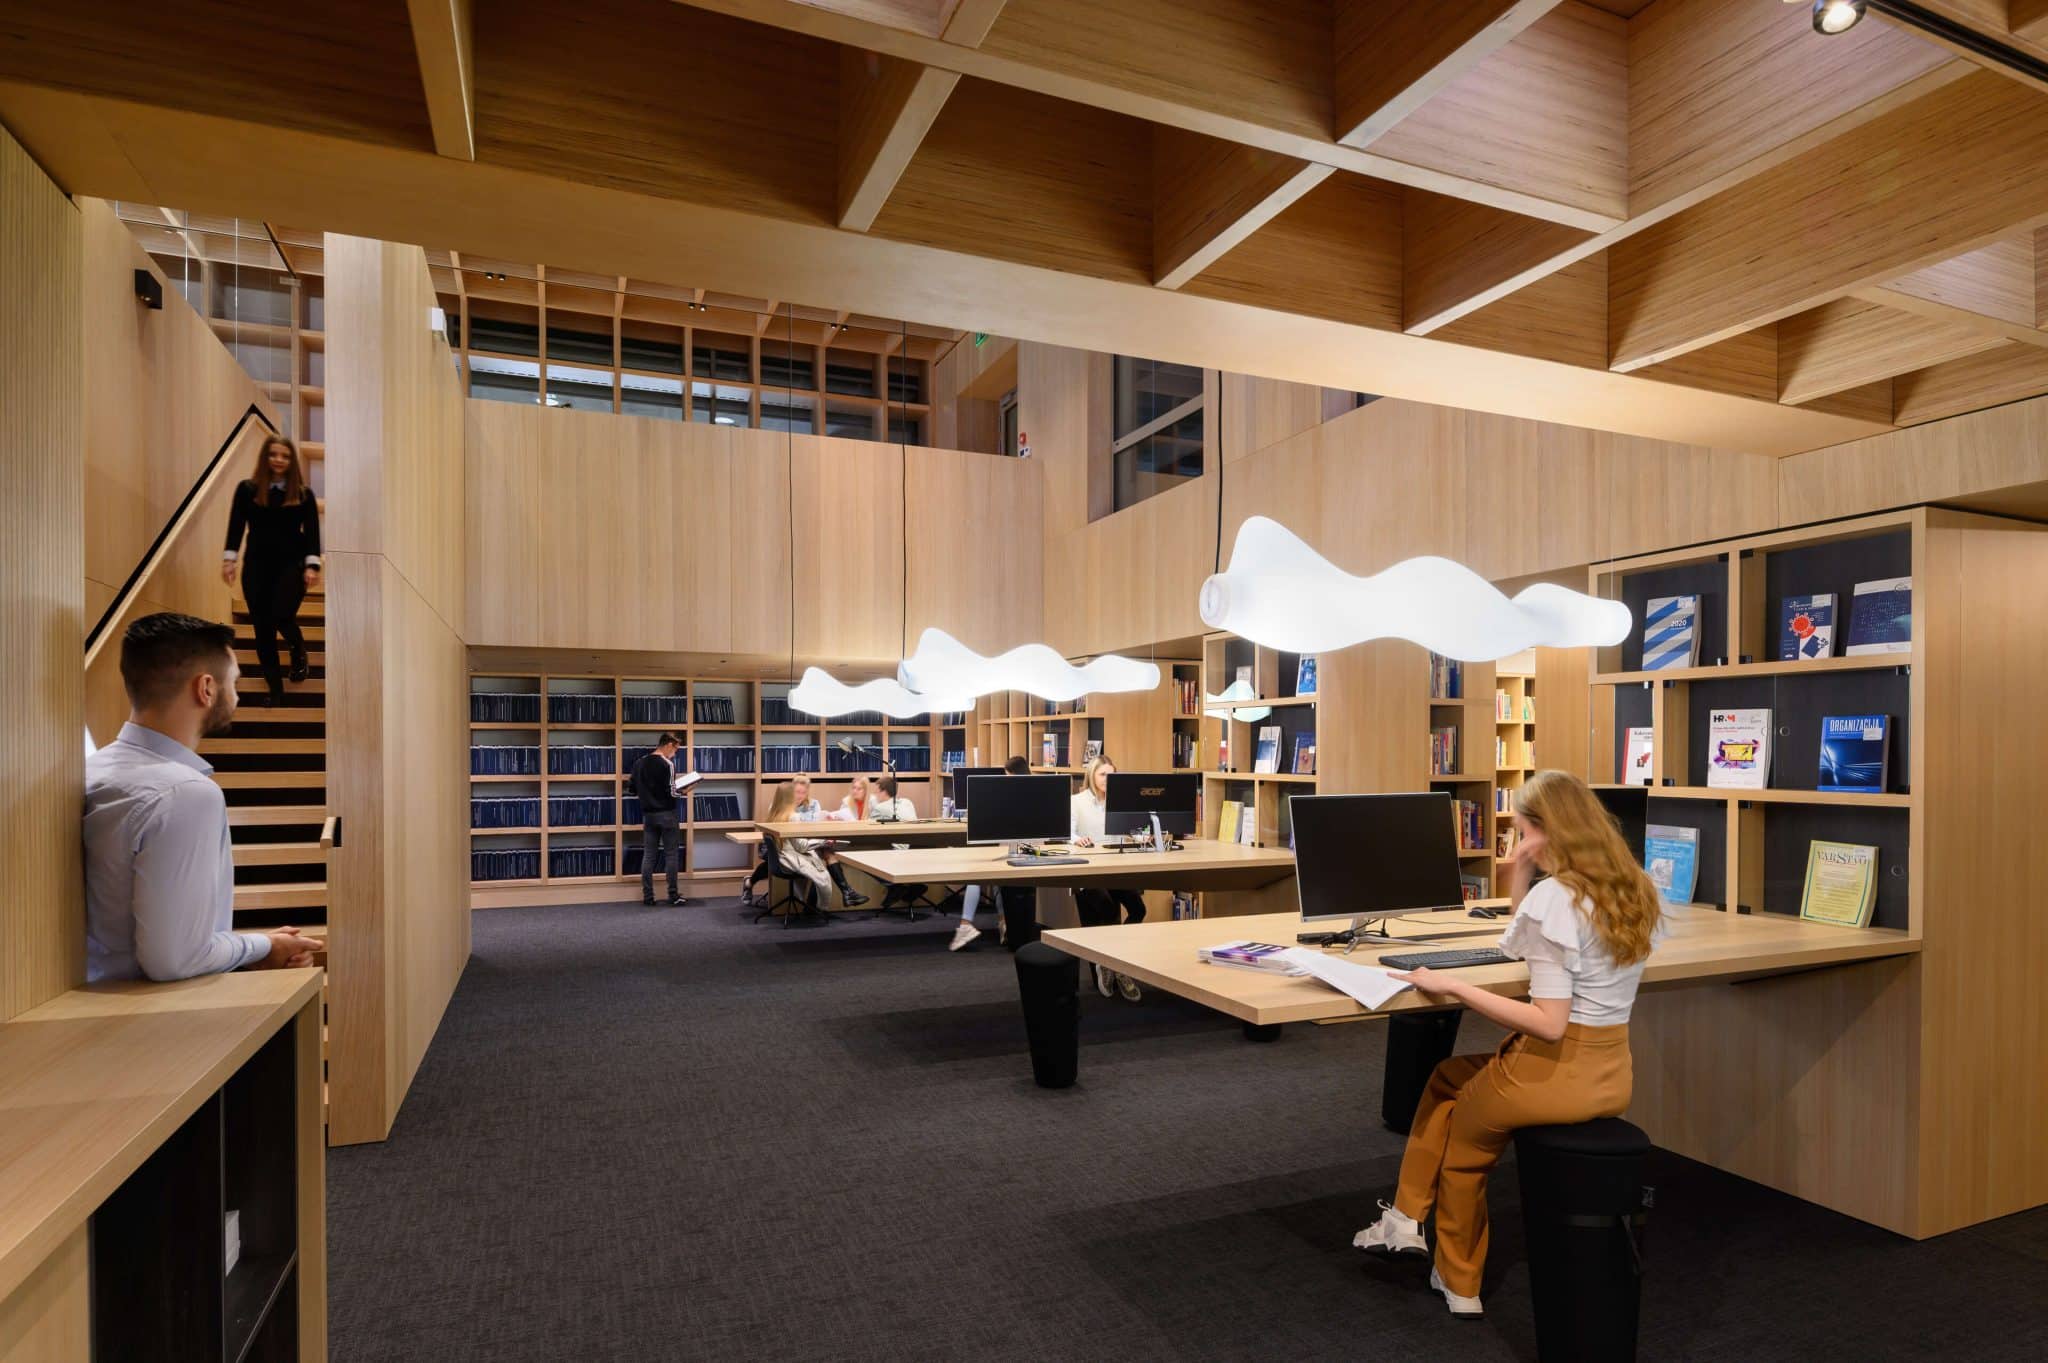 Knjižnica kot gnezdo, ki navdušuje z obiljem lesa